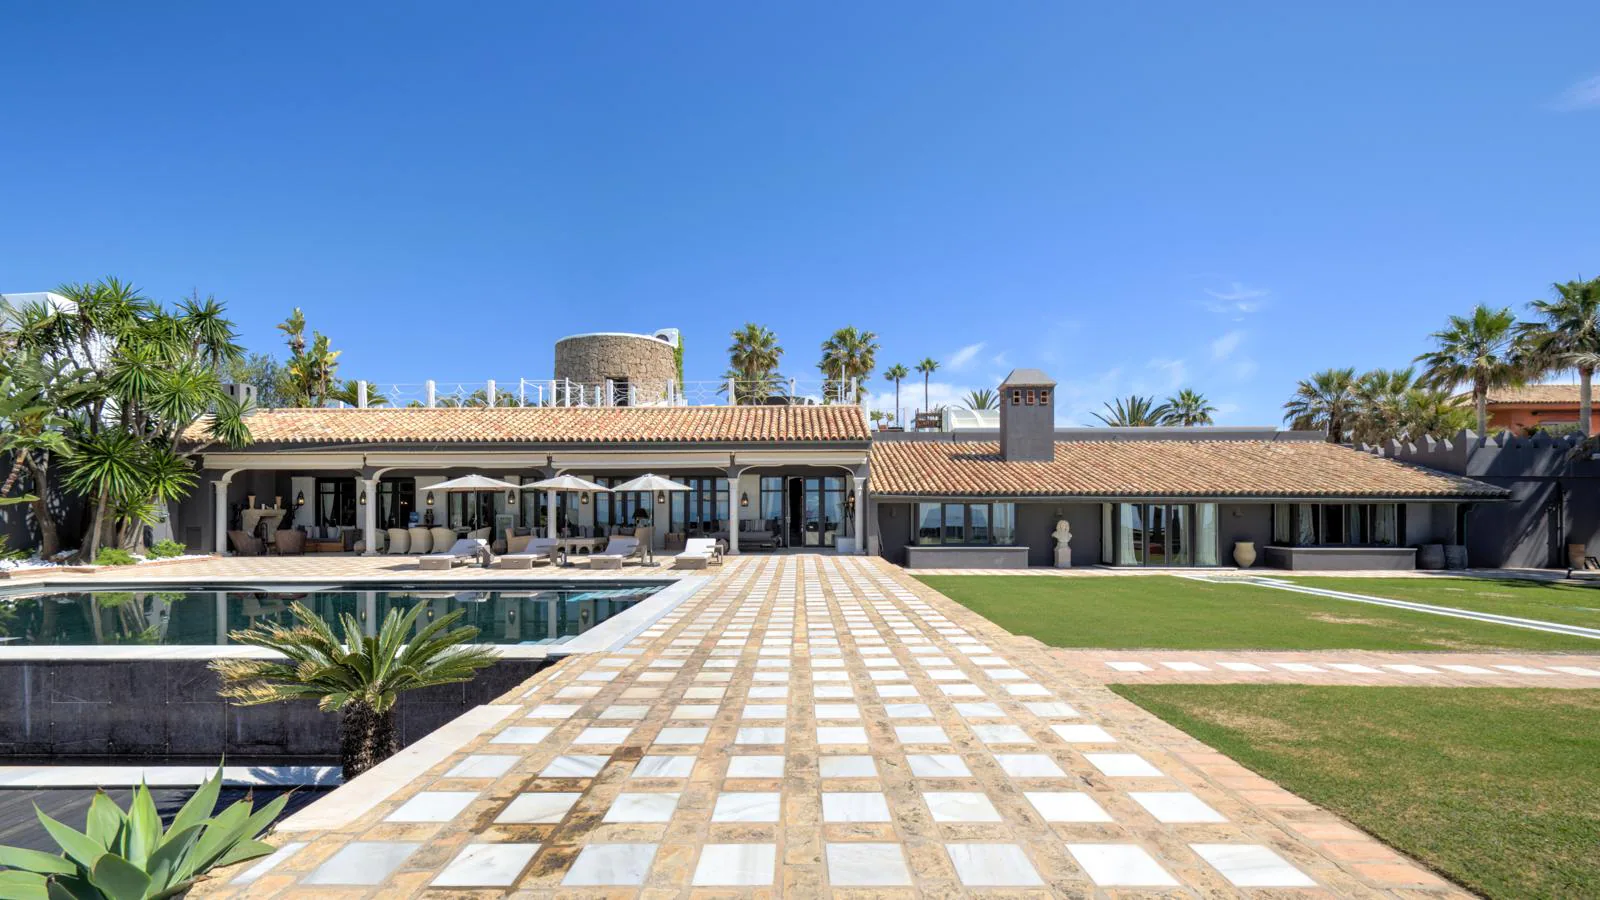 Villa en Los Monteros. La otra vivienda a ras de mar que está a la venta en Los Monteros tiene un suntuoso pasillo que conecta la puerta de entrada a la mansión con la playa